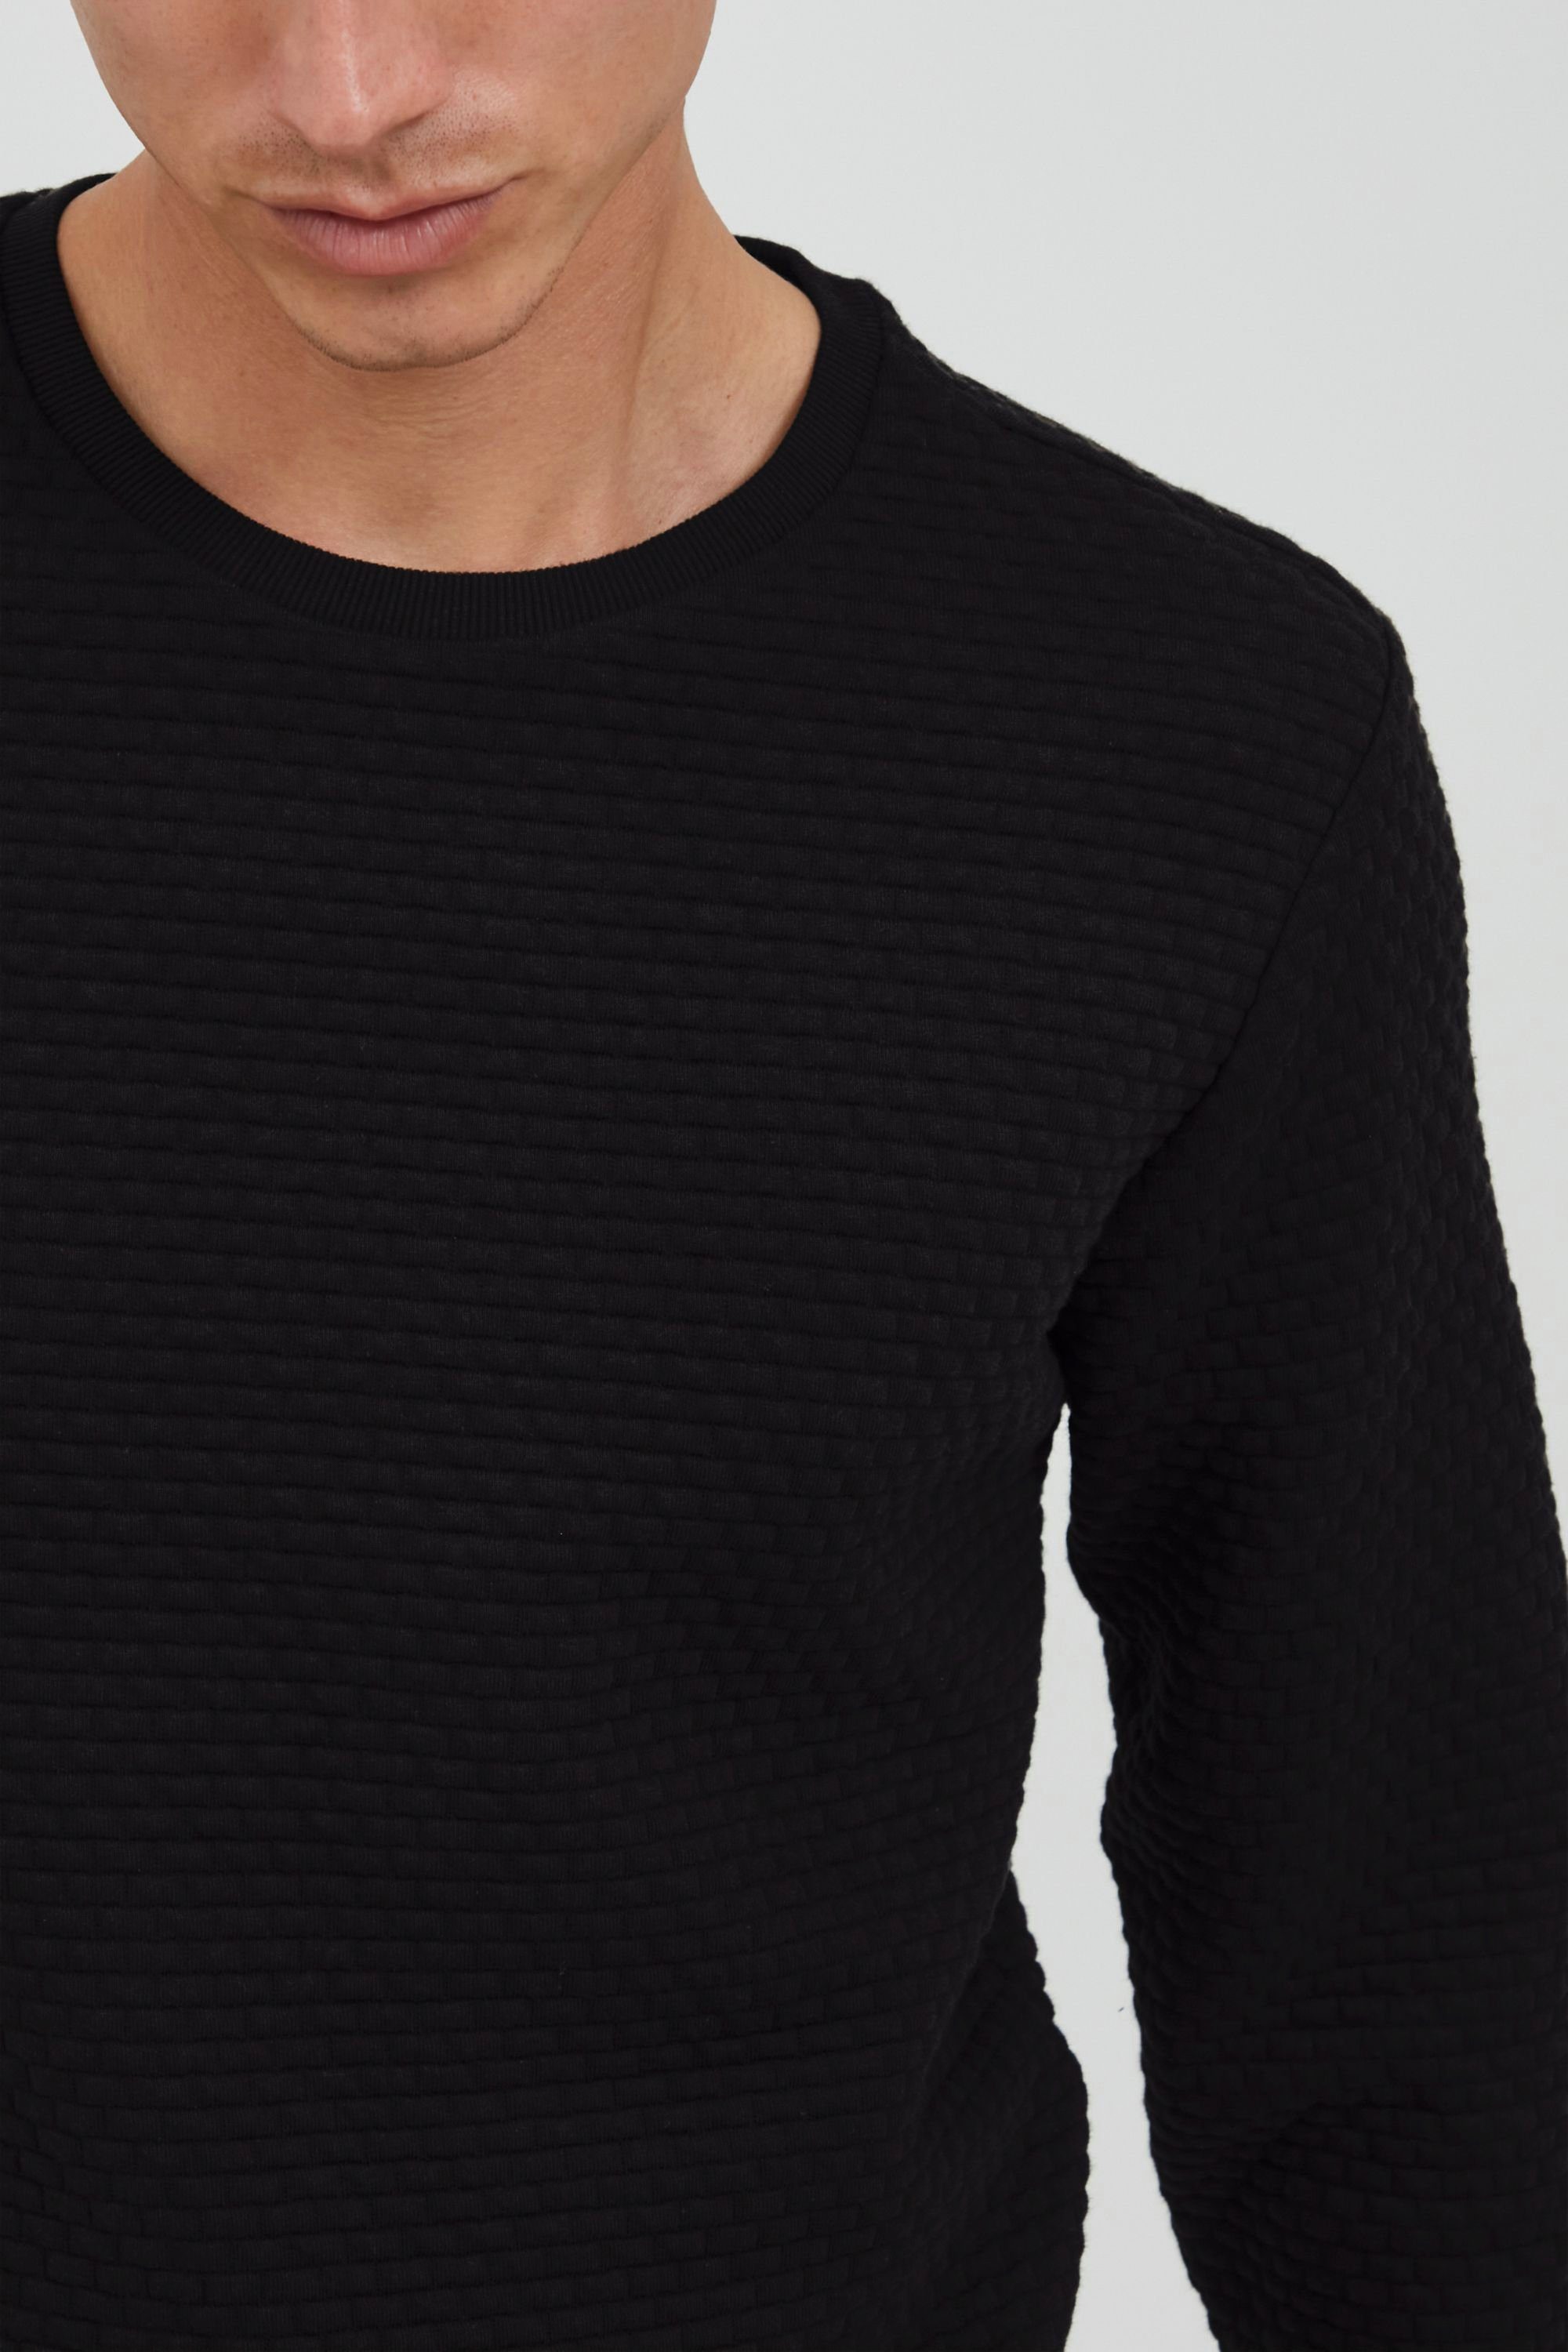 Rundhalsausschnitt Sweatshirt Black IDAnthony (999) Sweatshirt Indicode mit